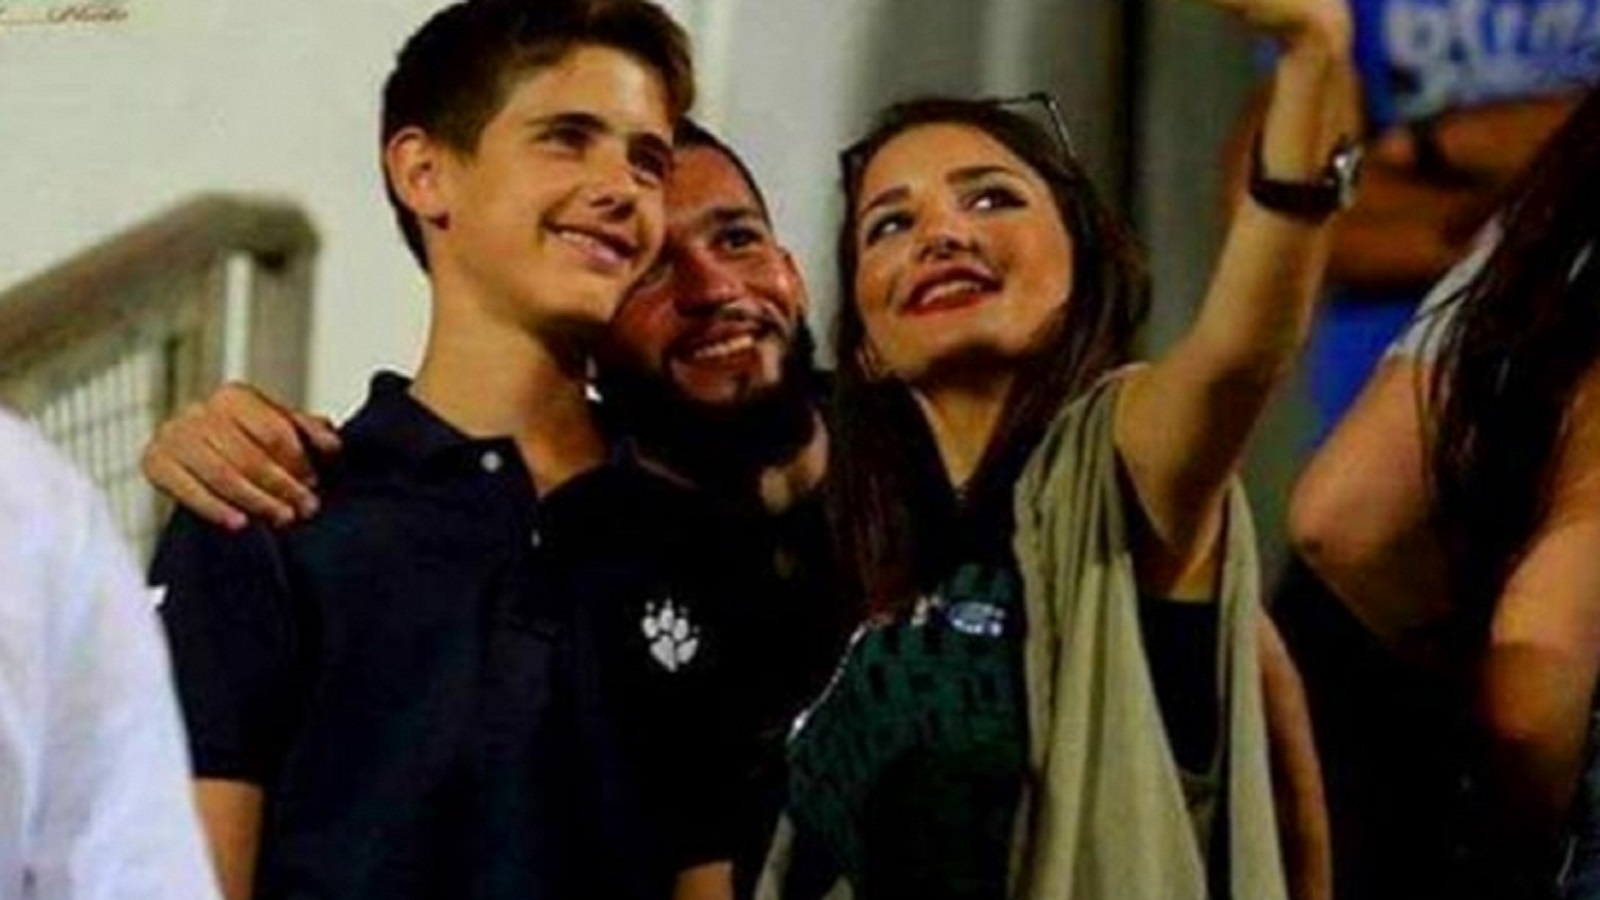 كريم بشار الأسد يتفوق على شقيقته زين